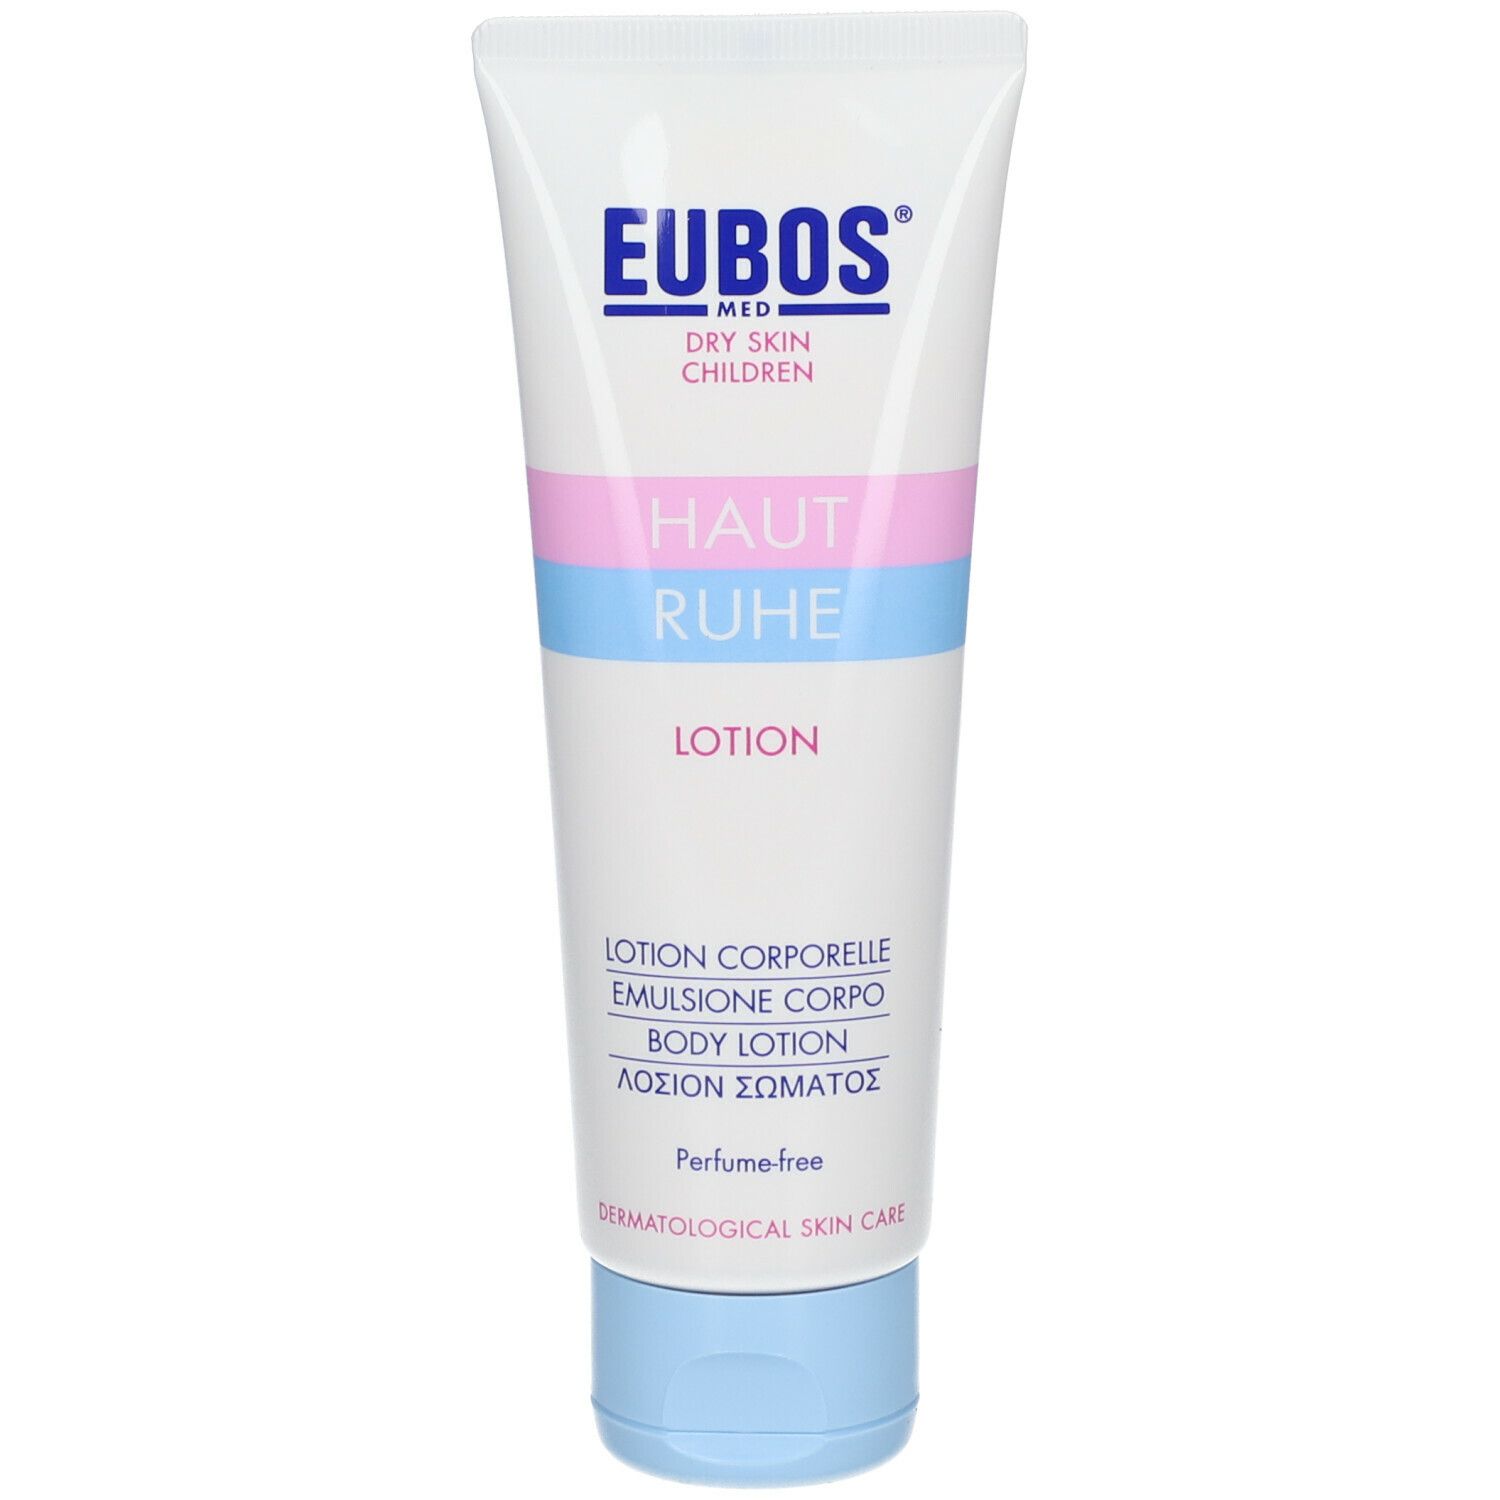 Image of EUBOS® MED Haut Ruhe Lotion parfümfrei